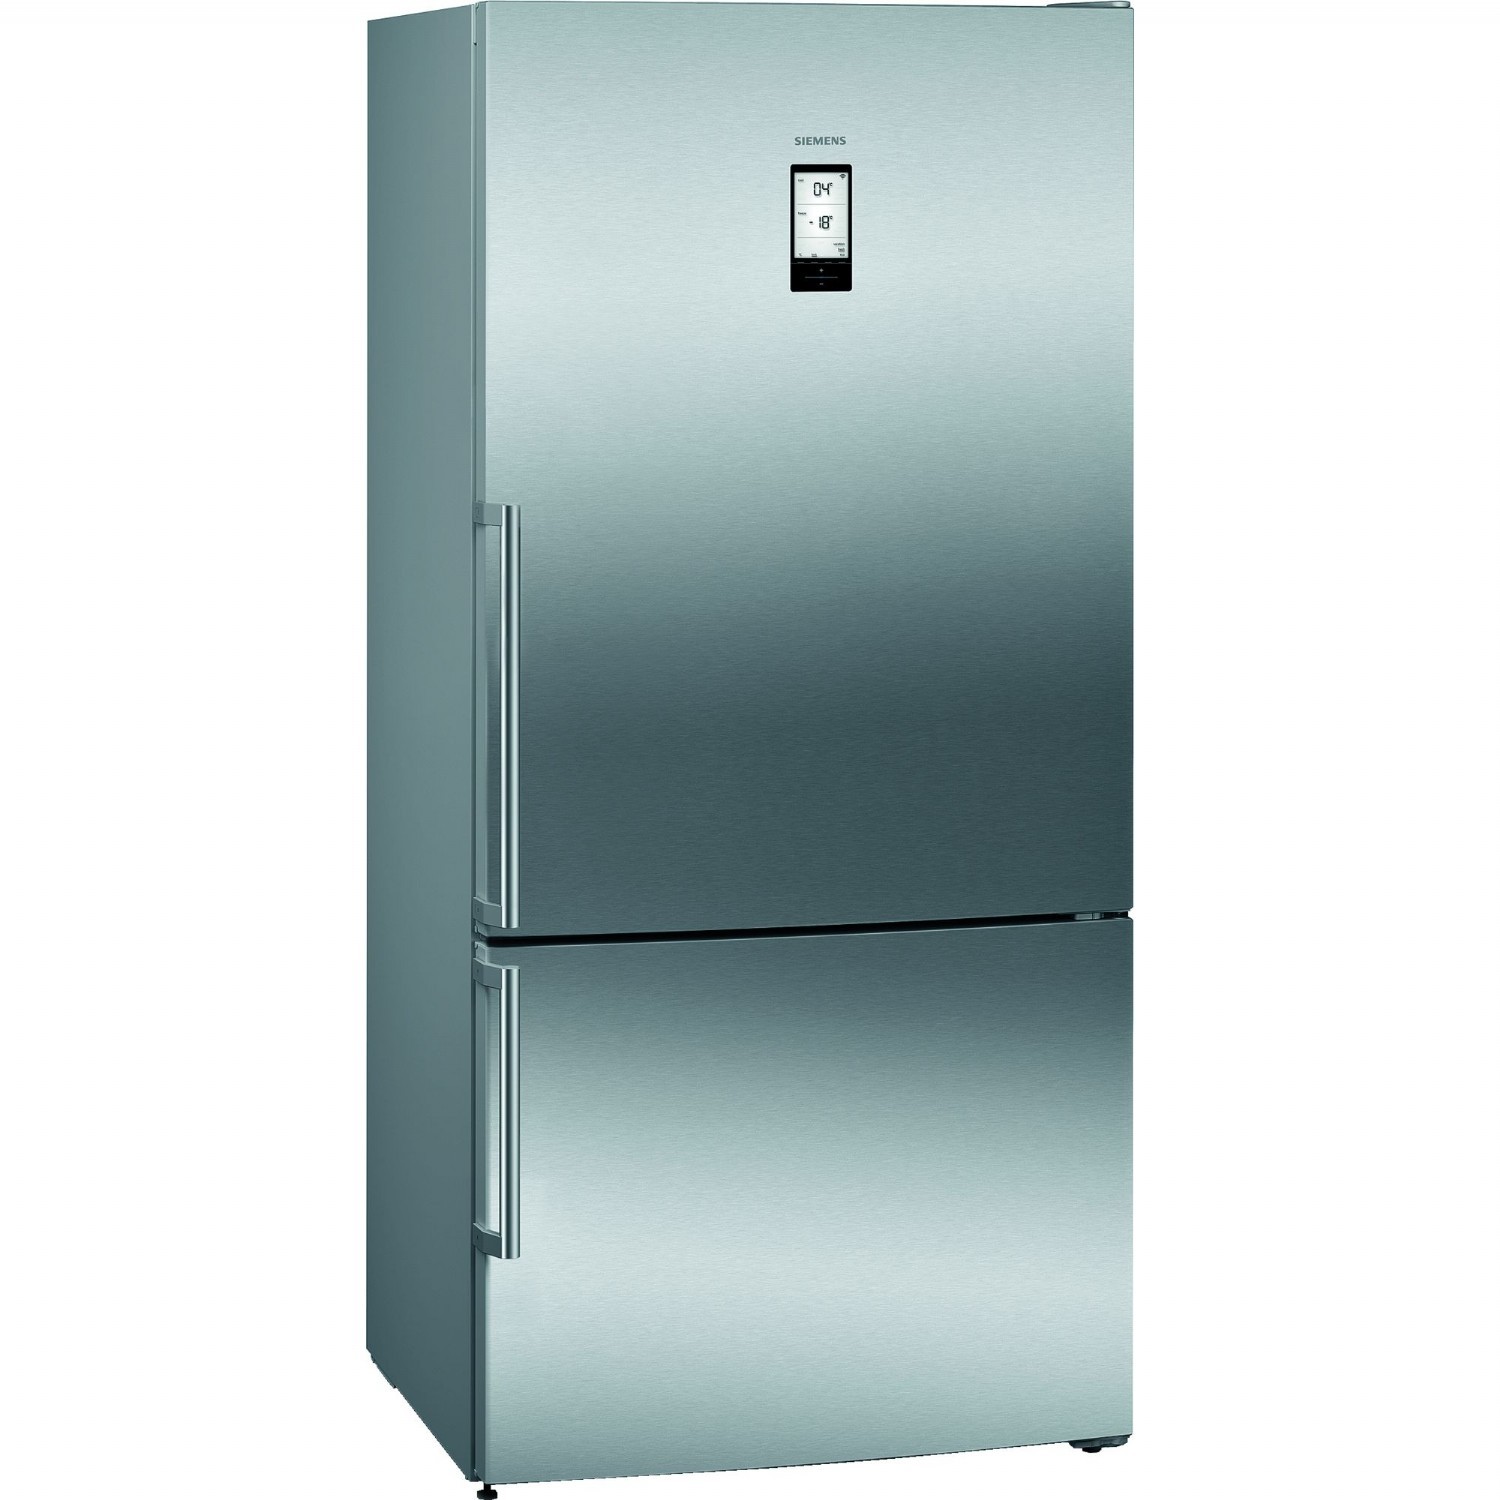 Buzdolabı | Siemens KG86NAIF0N Kombi No-Frost Buzdolabı | KG86NAIF0N | KG86NAIF0N, kg86naıf0n, kg86naif0n, Siemens KG86NAIF0N Kombi No-Frost Buzdolabı, Siemens KG86NAIF0N Buzdolabı | 